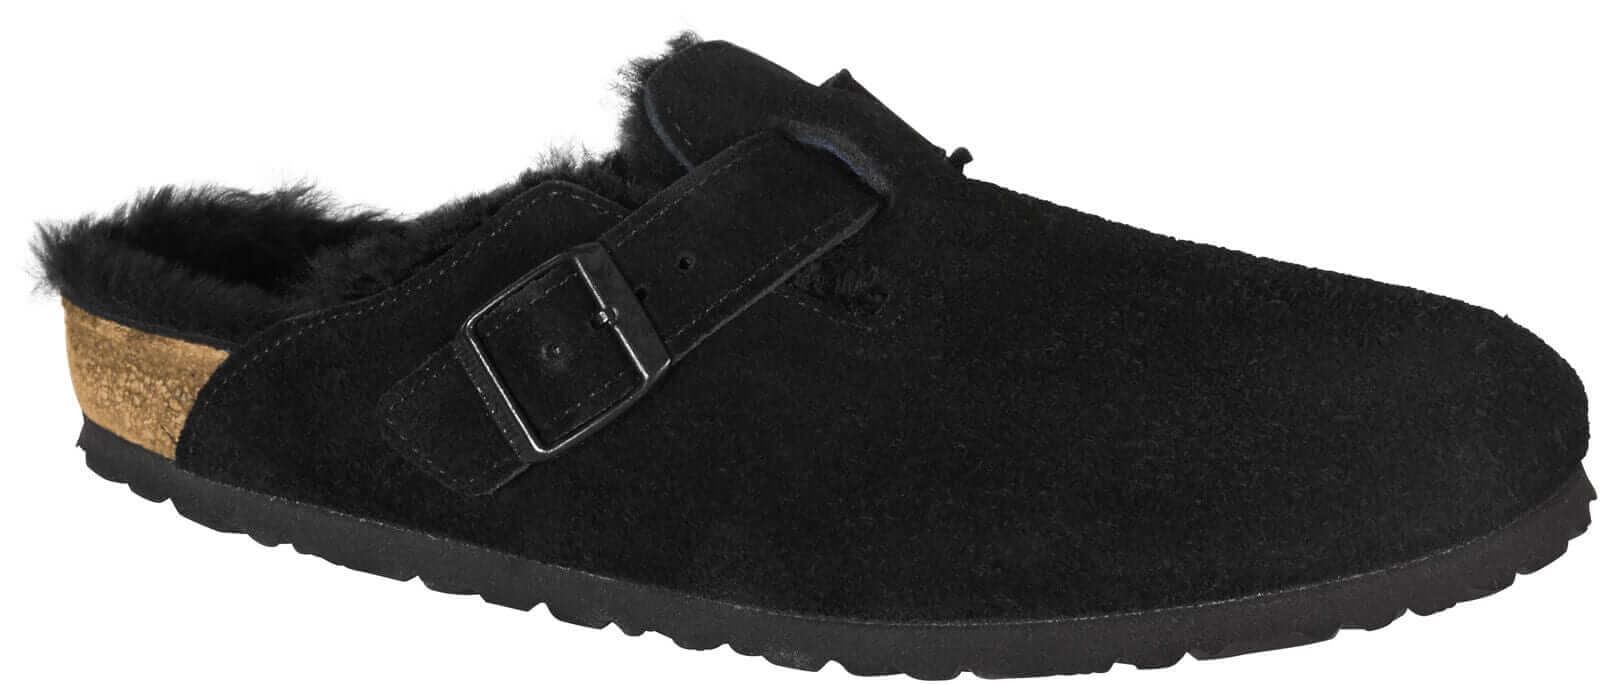 Birkenstock shoes Birkenstock Boston Shearling Suede Leather - Black